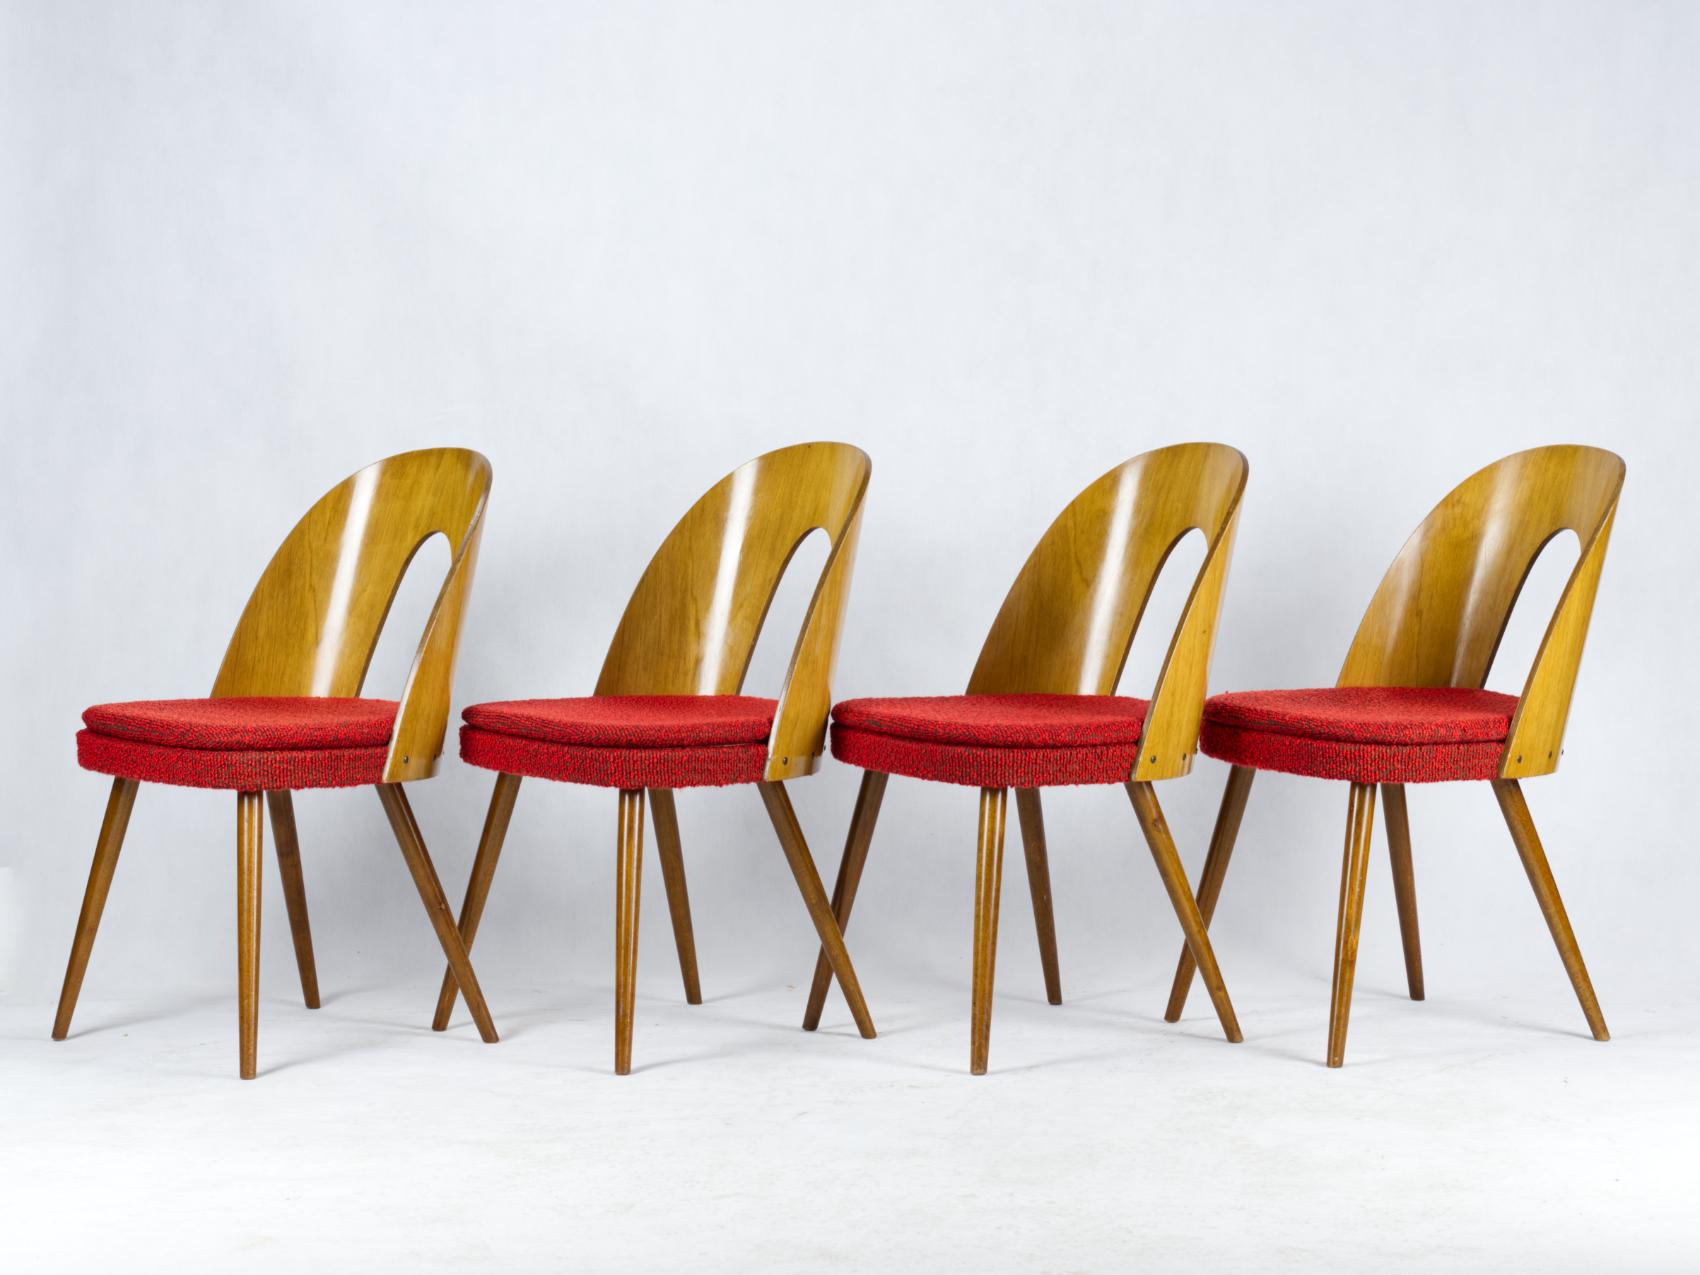 Fabric Mid Century Dining Chairs by Antonín Šuman for Tatra Nabytok Np, 1960s For Sale